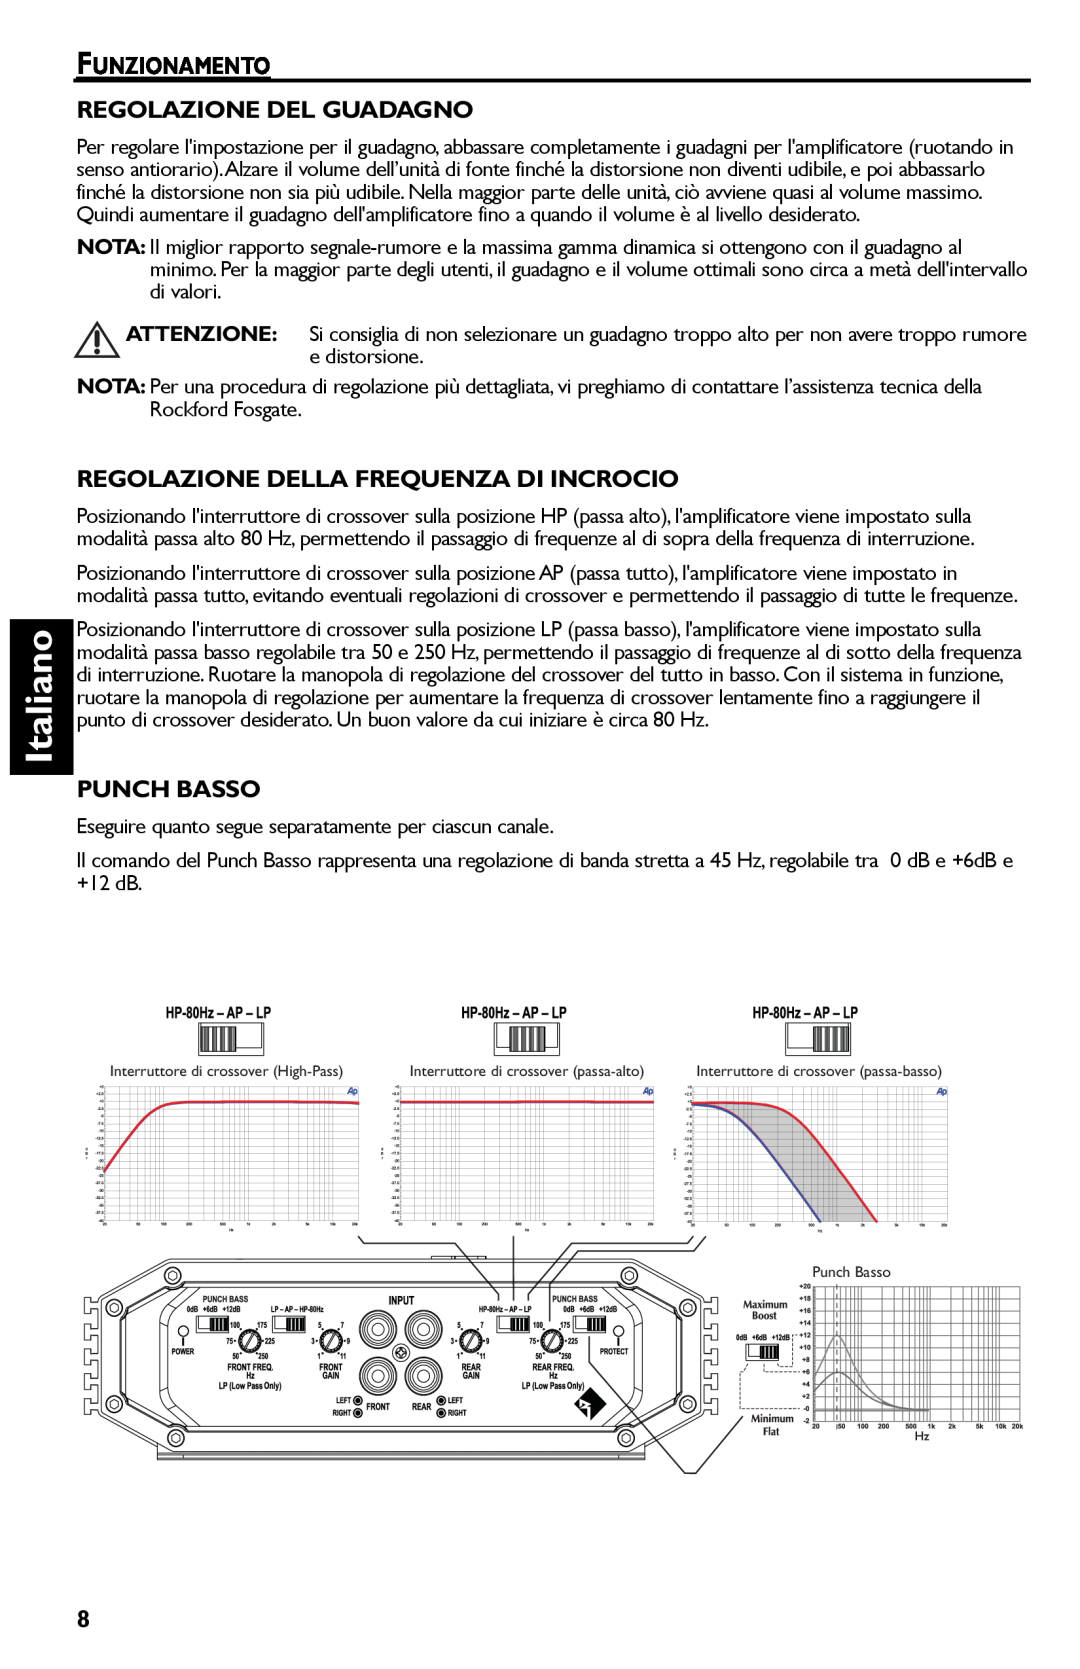 Rockford Fosgate R300-4 manual Italiano, Funzionamento Regolazione Del Guadagno, Regolazione Della Frequenza Di Incrocio 